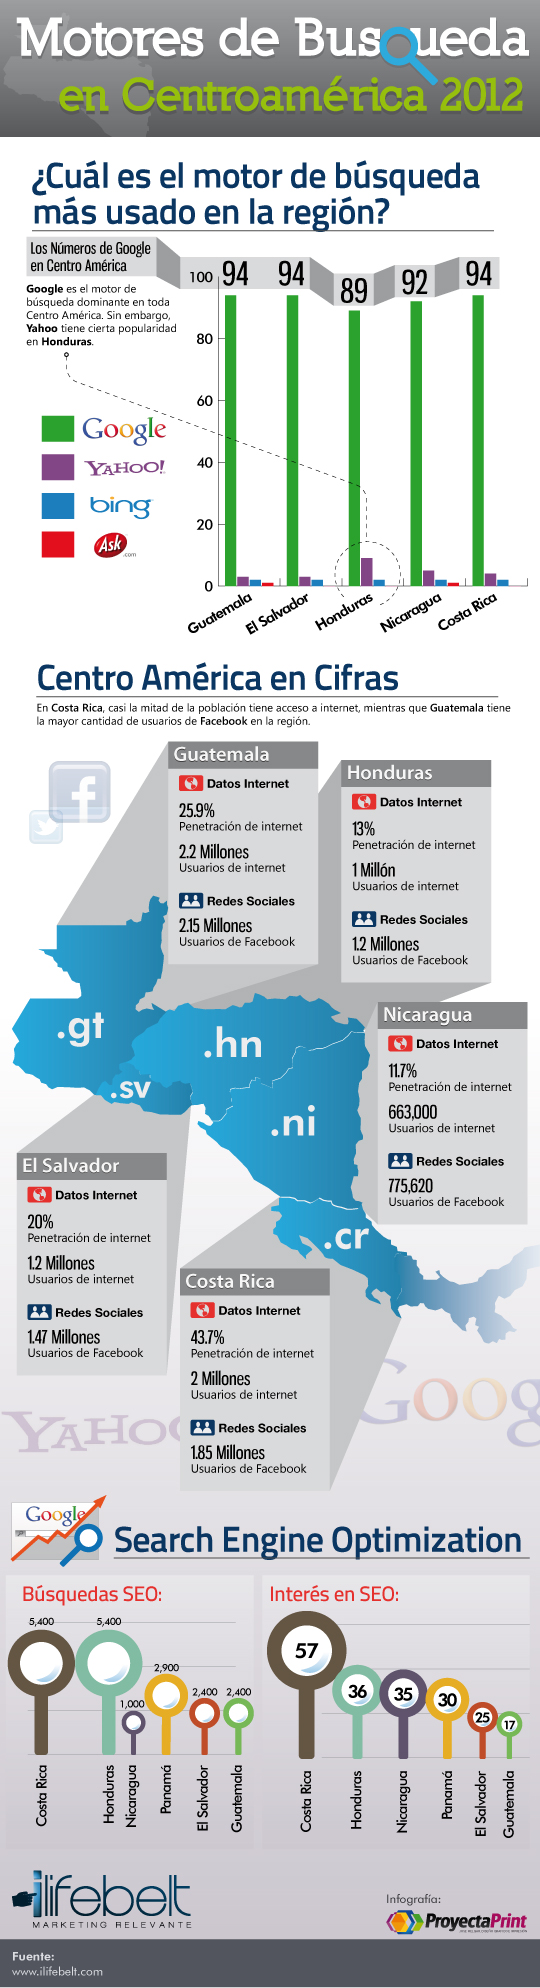 Infografía de los motores de búsqueda en Centroamérica